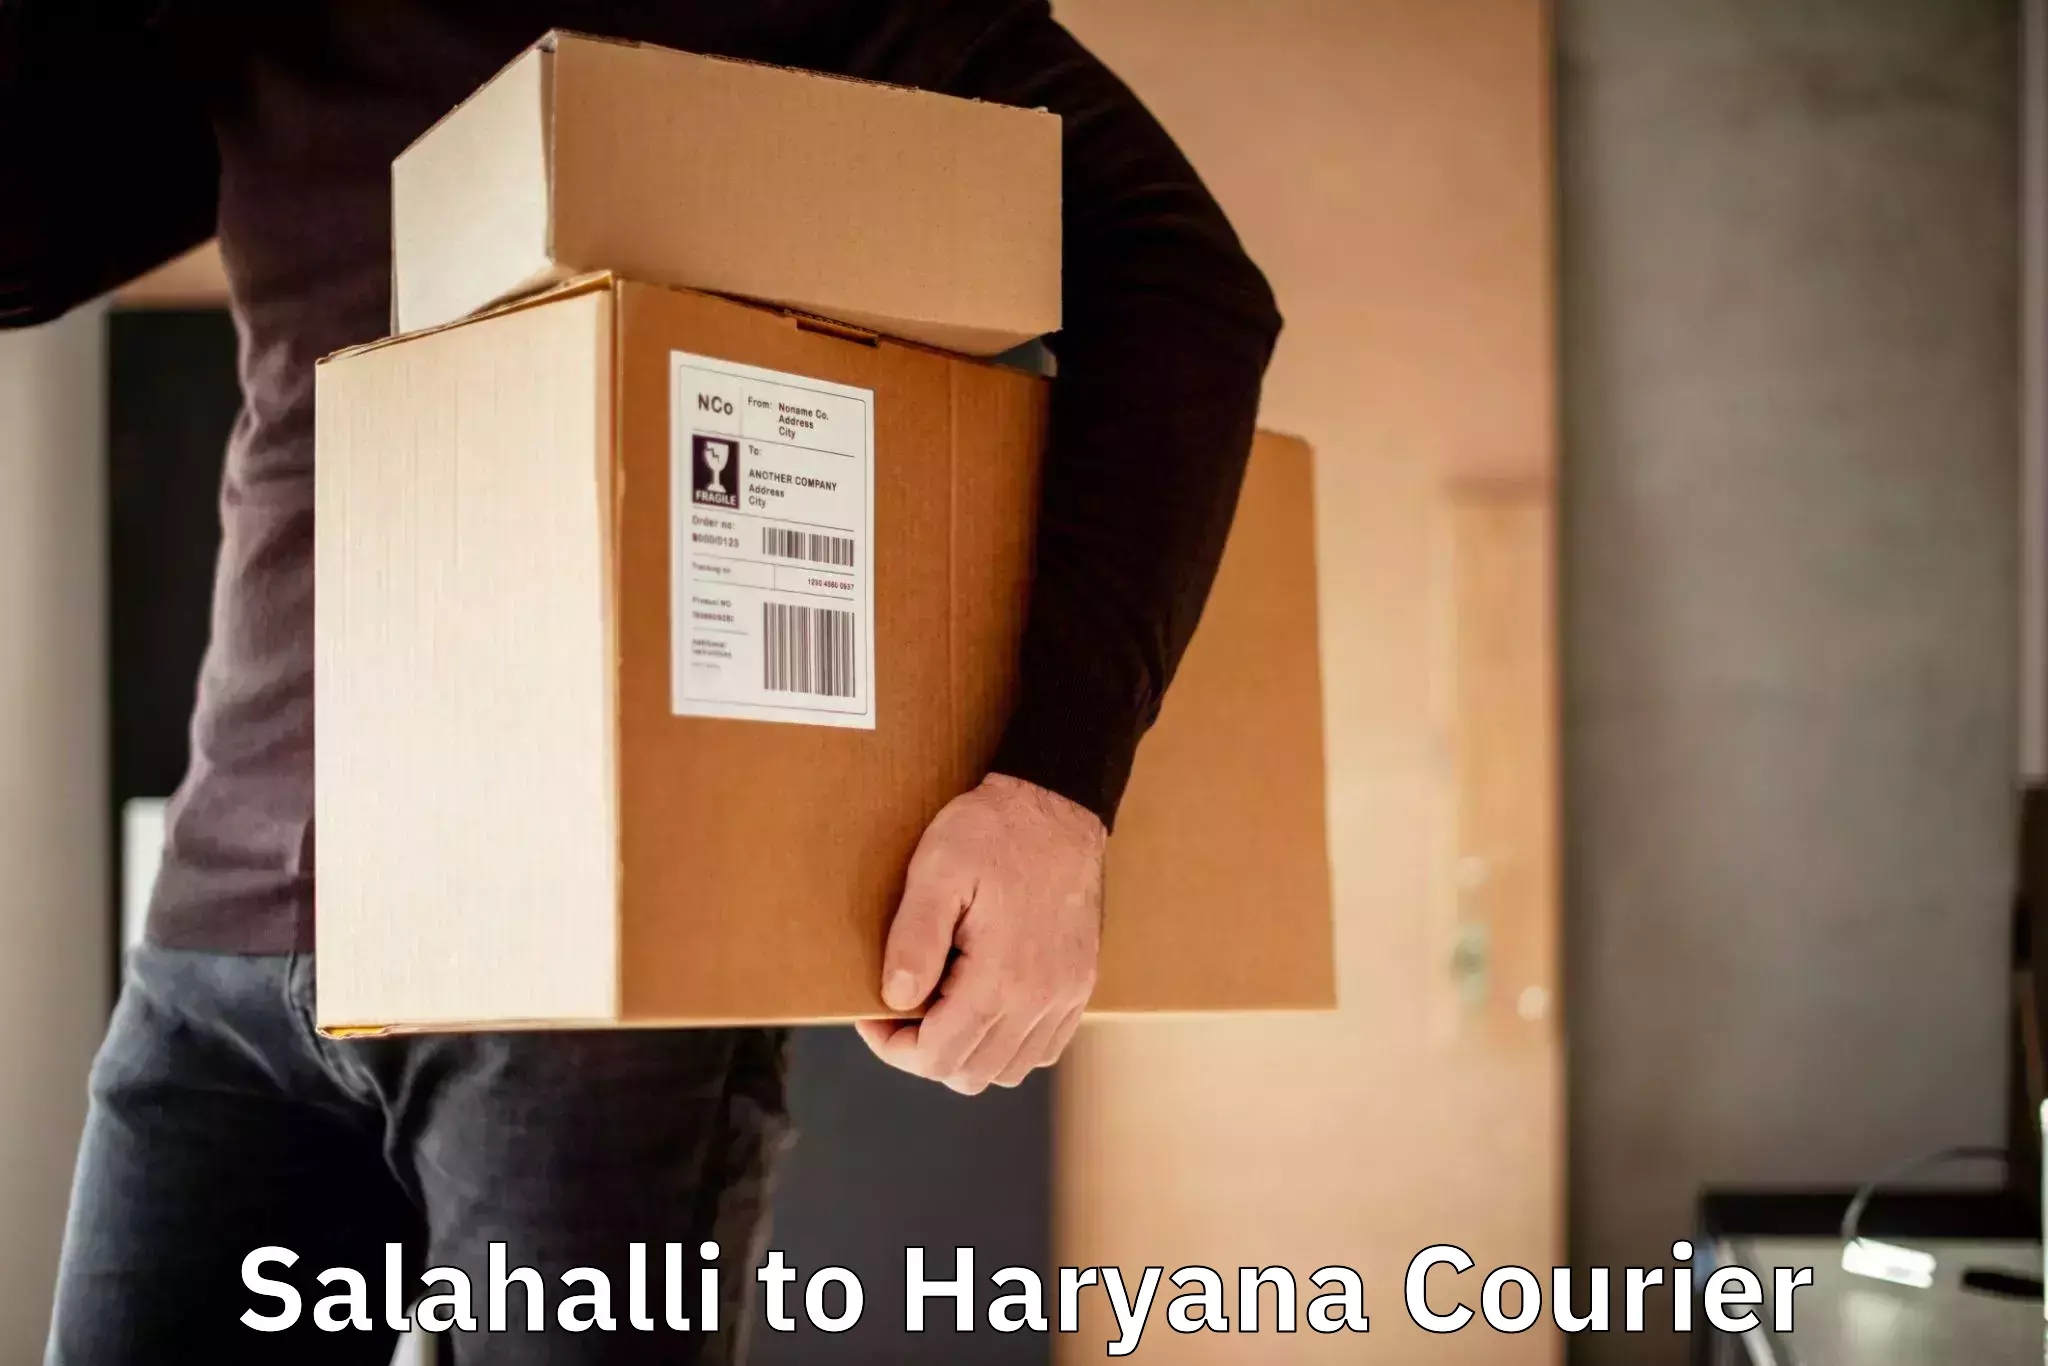 Express mail service Salahalli to Haryana